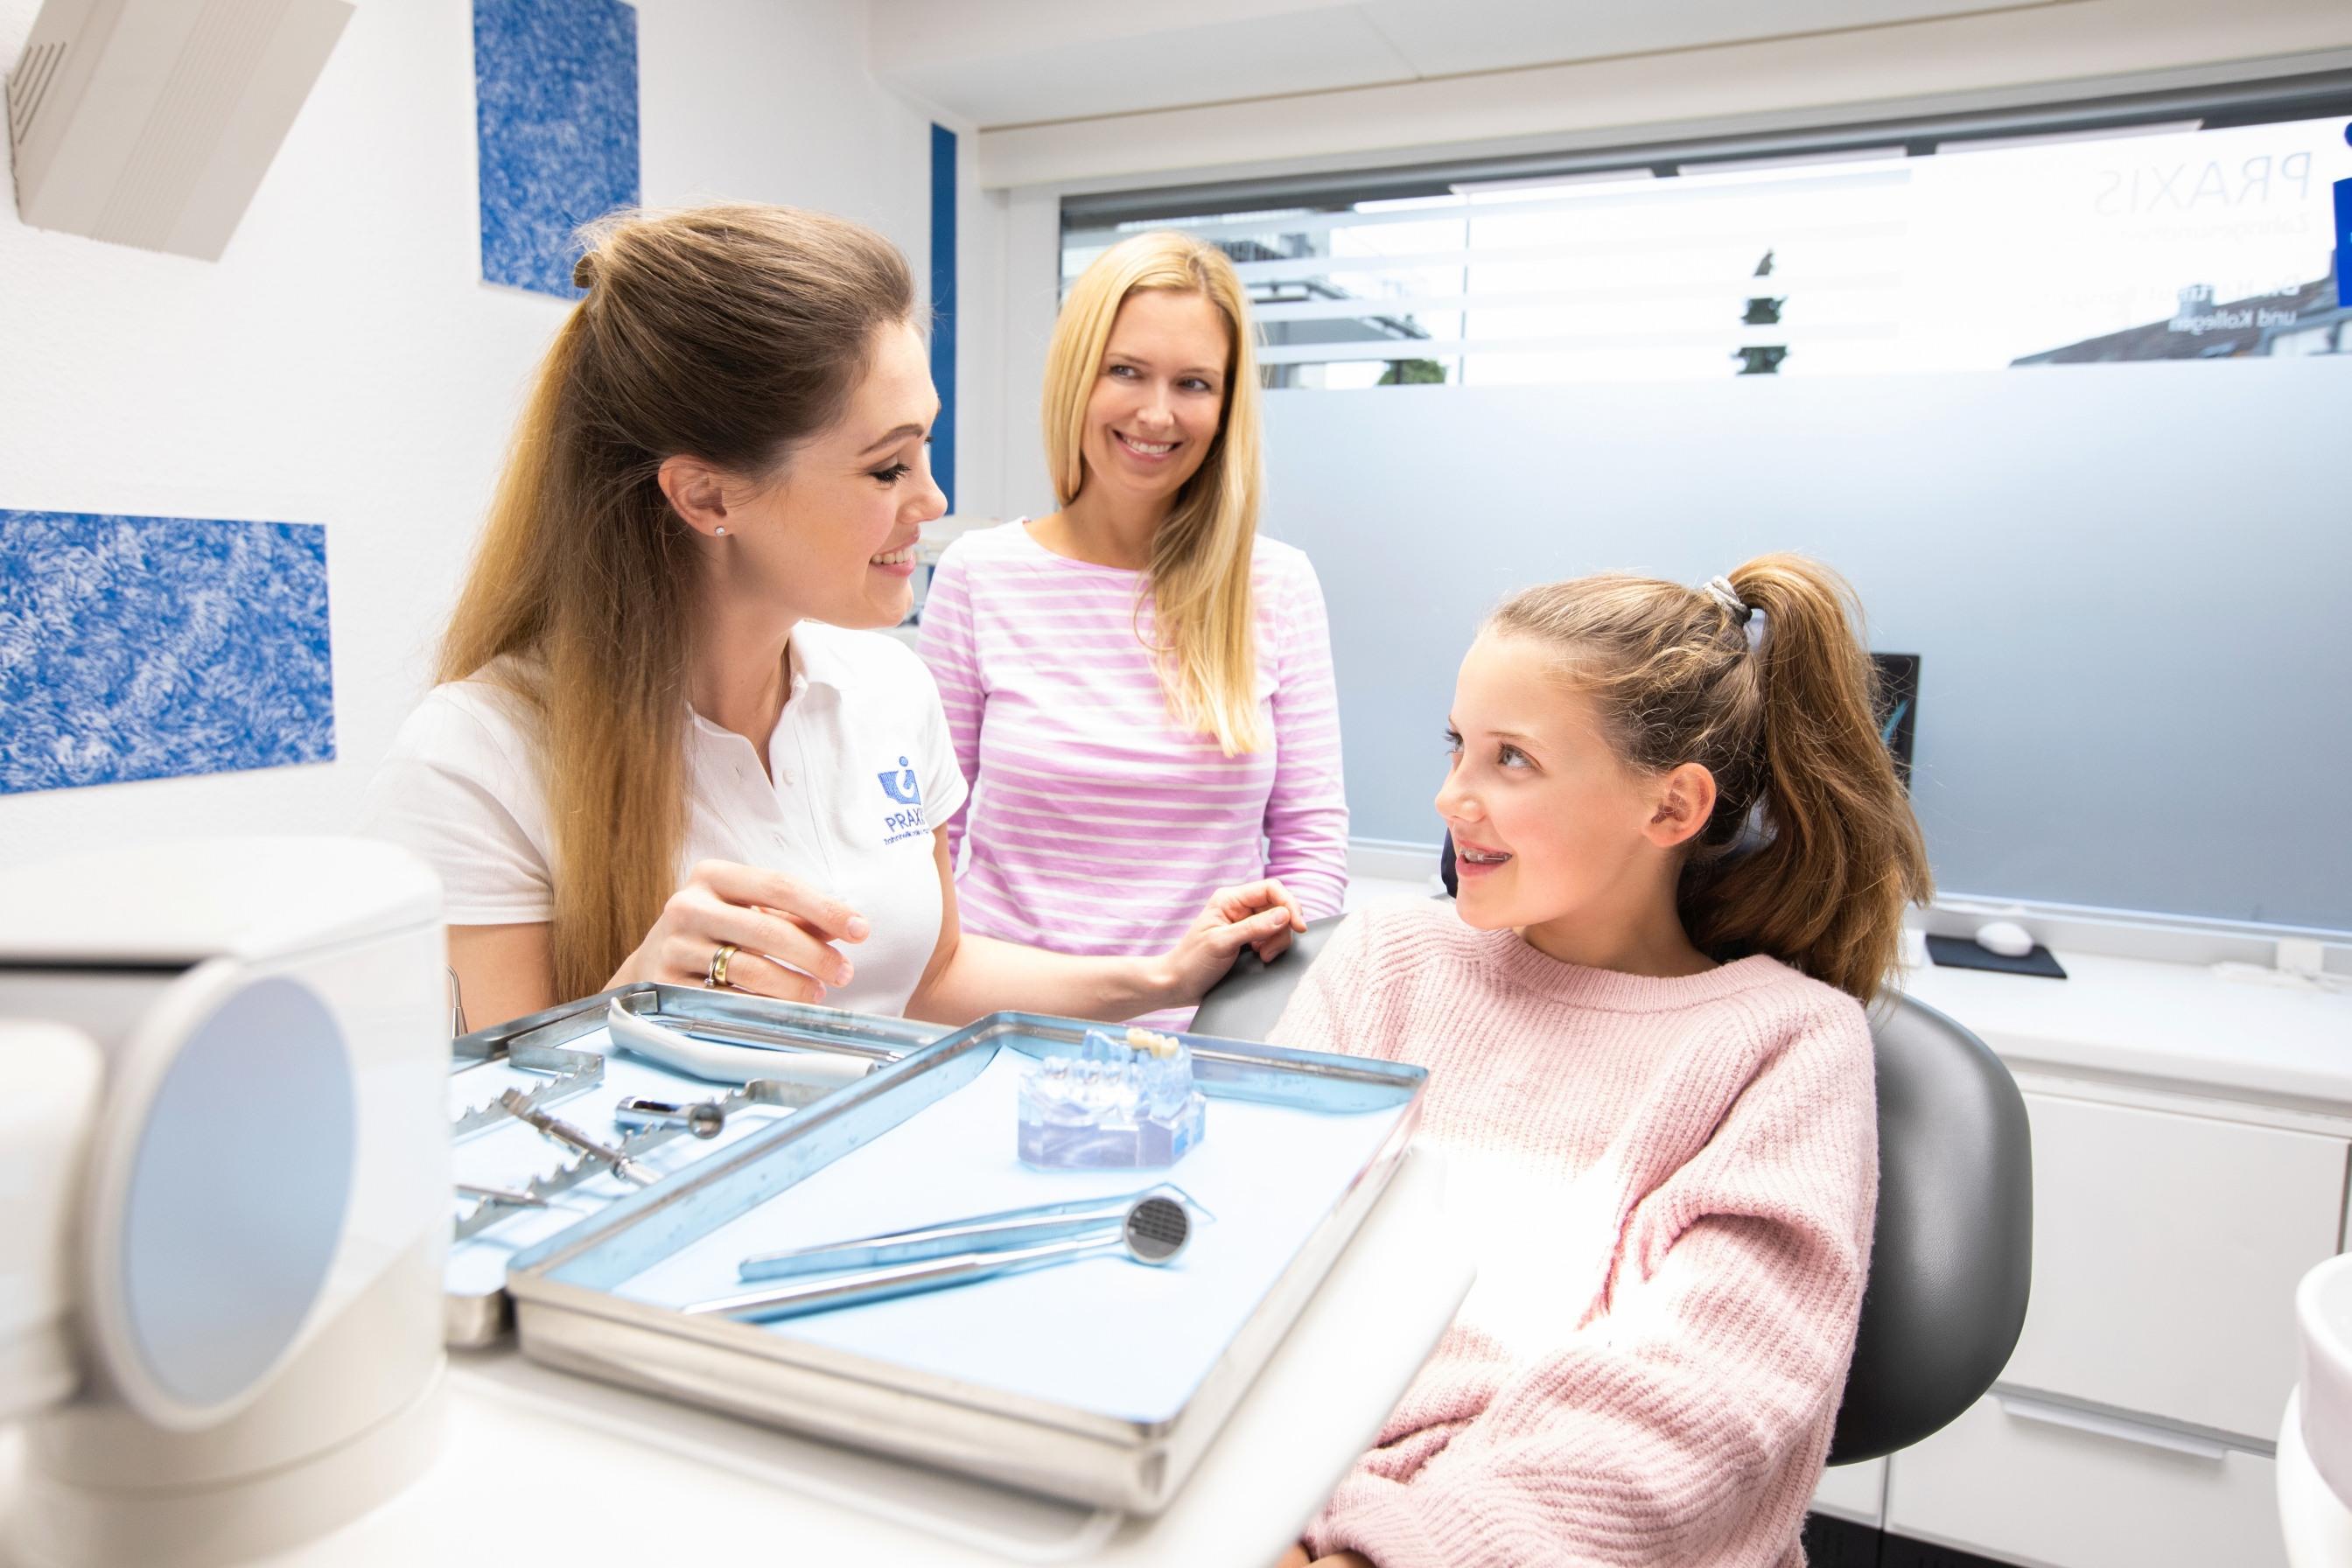 Praxis für Zahnheilkunde und Implantologie Dr. Bongartz MSc MSc & Kollegen, Krahnendonk 7 in Mönchengladbach